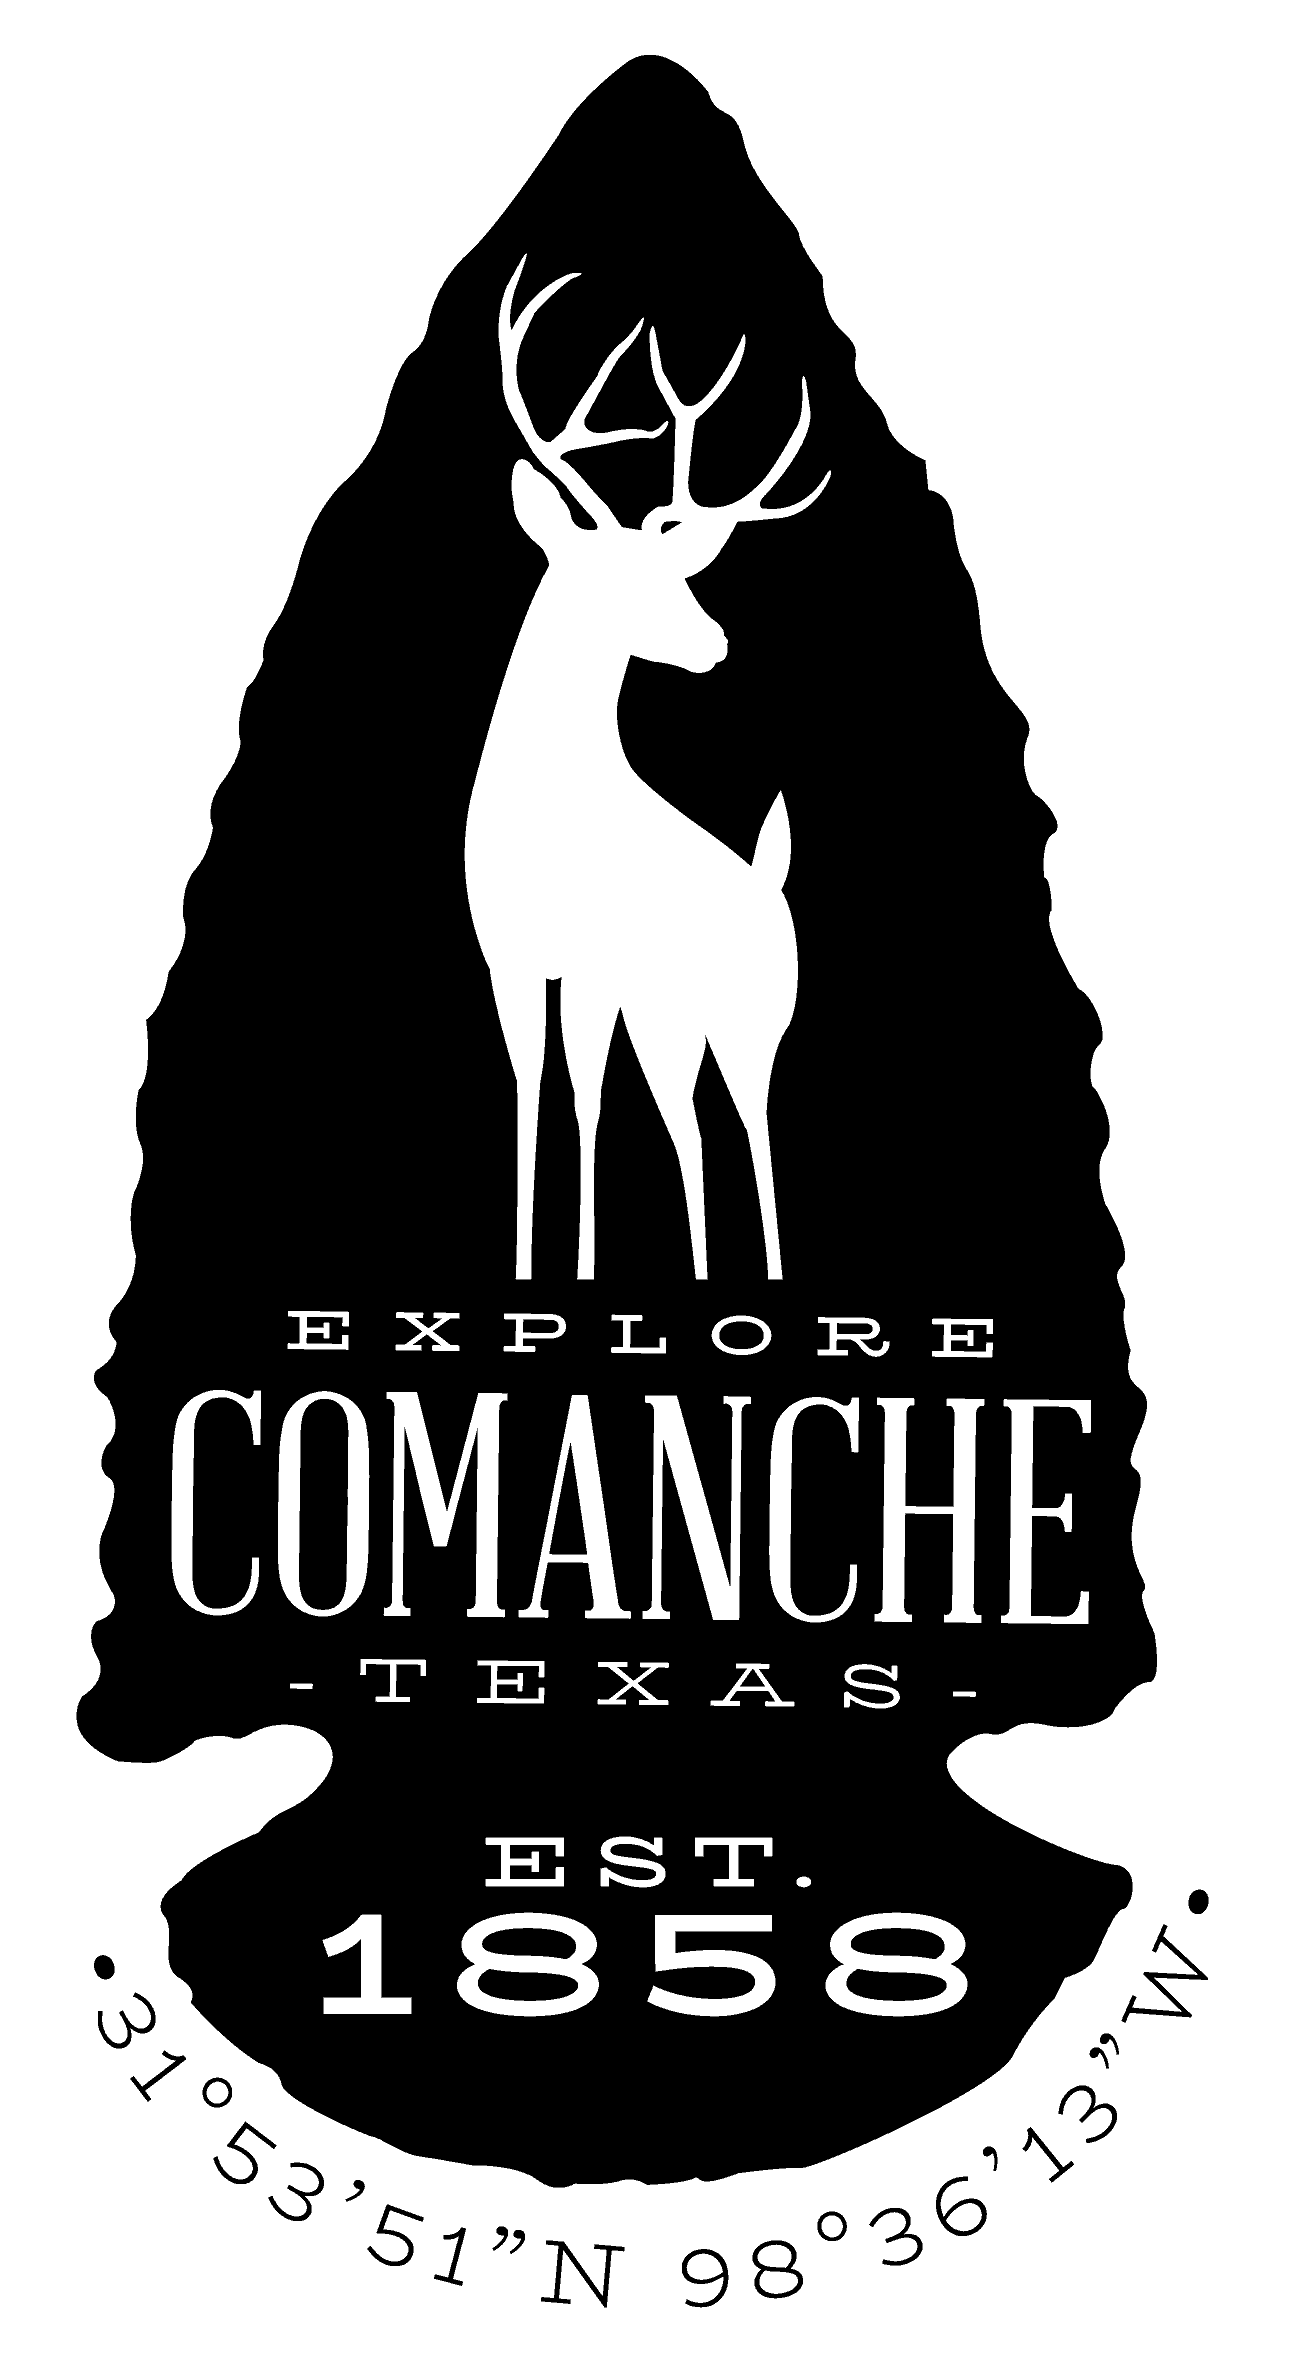 Comanche Logo - Home - Explore Comanche, Texas